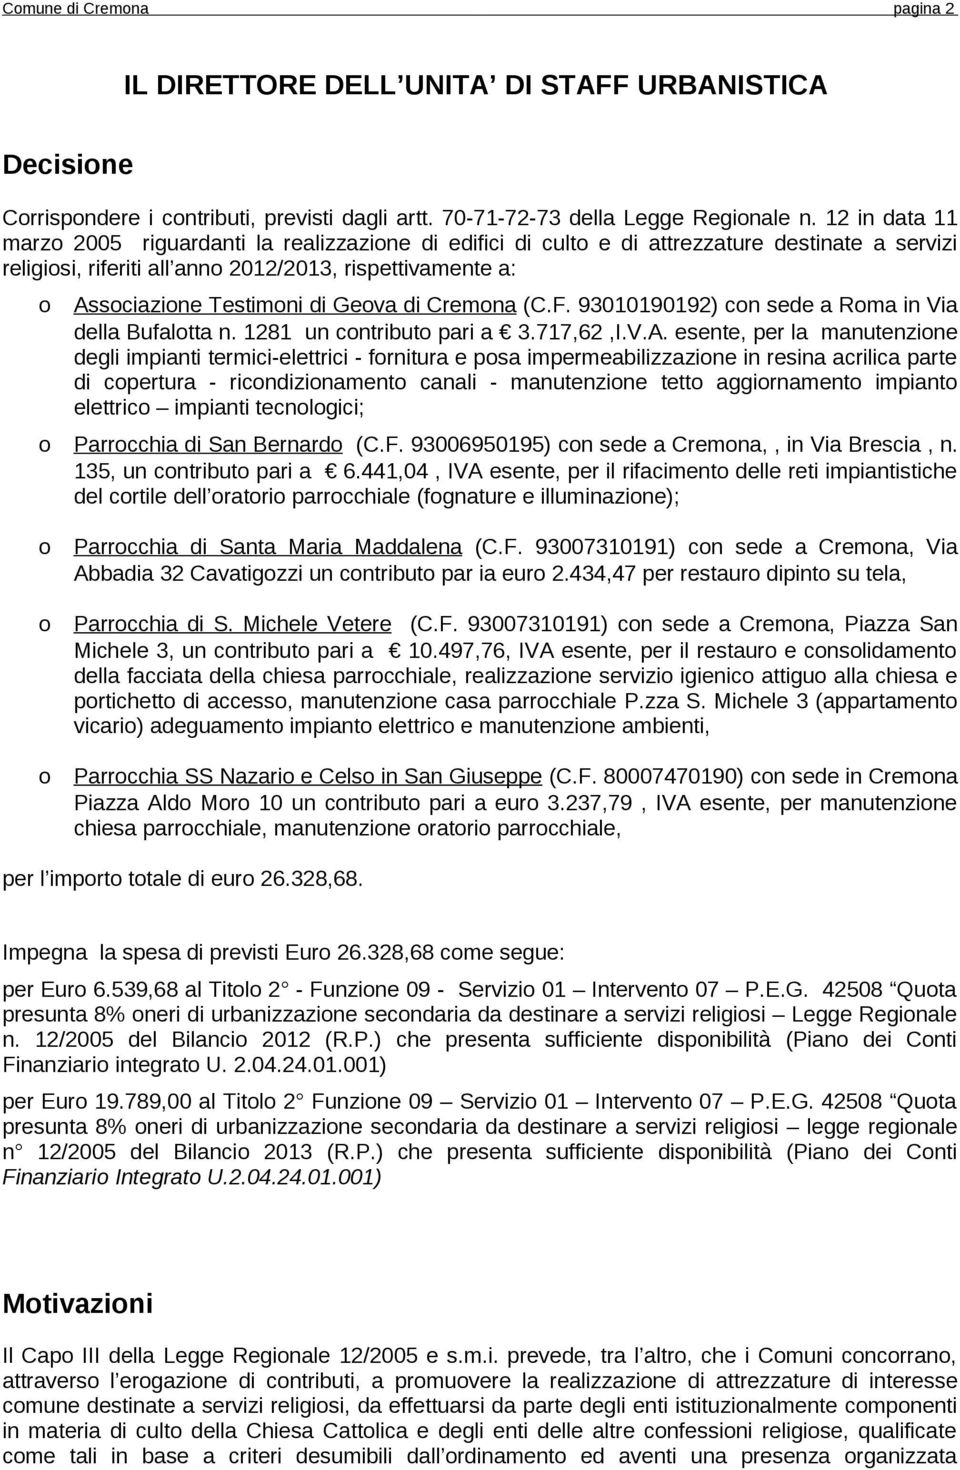 Cremna (C.F. 93010190192) cn sede a Rma in Via della Bufaltta n. 1281 un cntribut pari a 3.717,62,I.V.A.